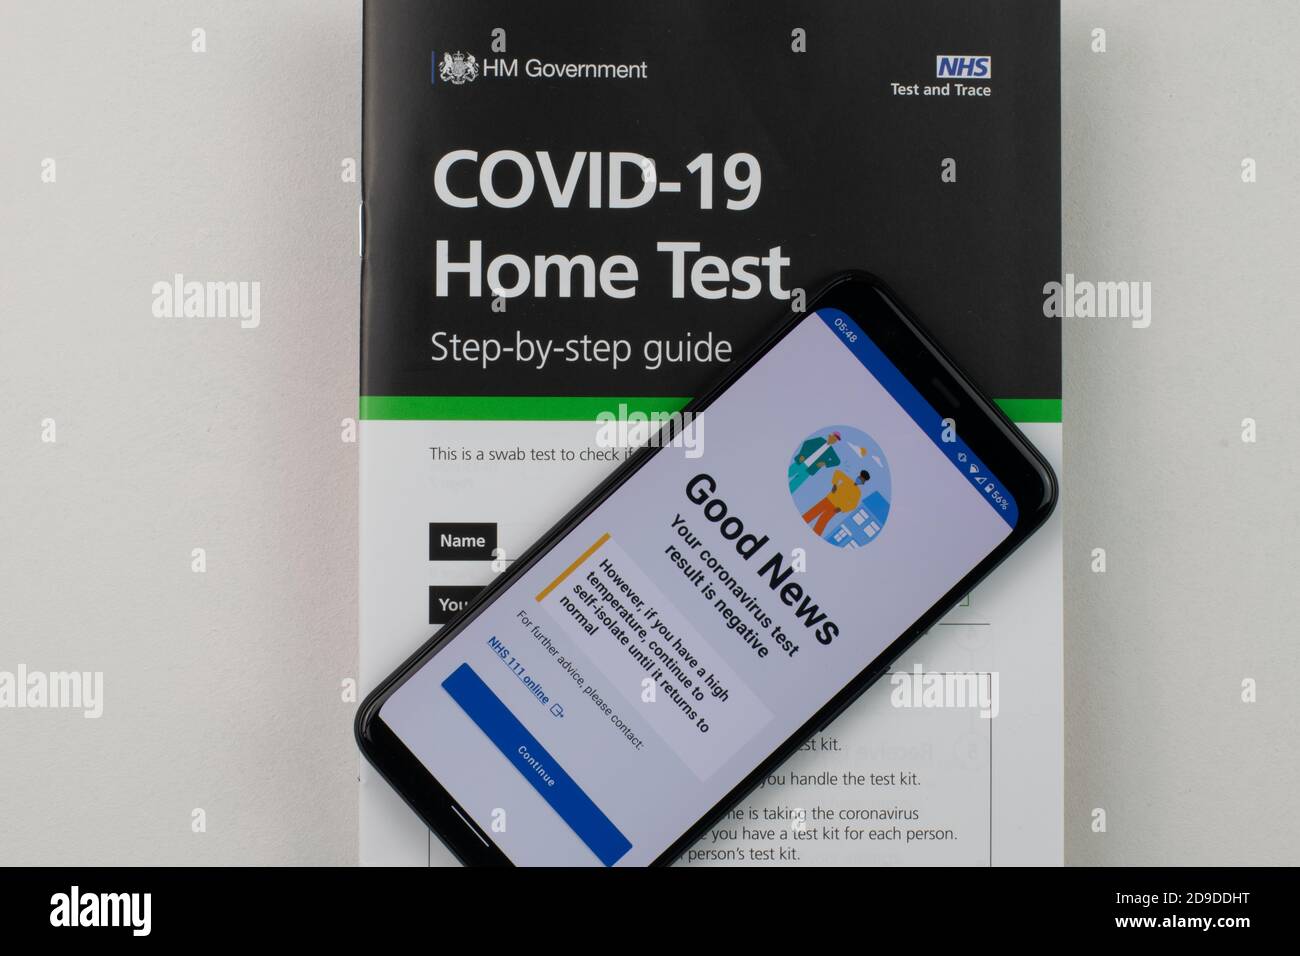 Résultat du test du coronavirus négatif sur le téléphone mobile reposant sur la brochure d'instructions pour la trousse de test à domicile COVID-19. Banque D'Images